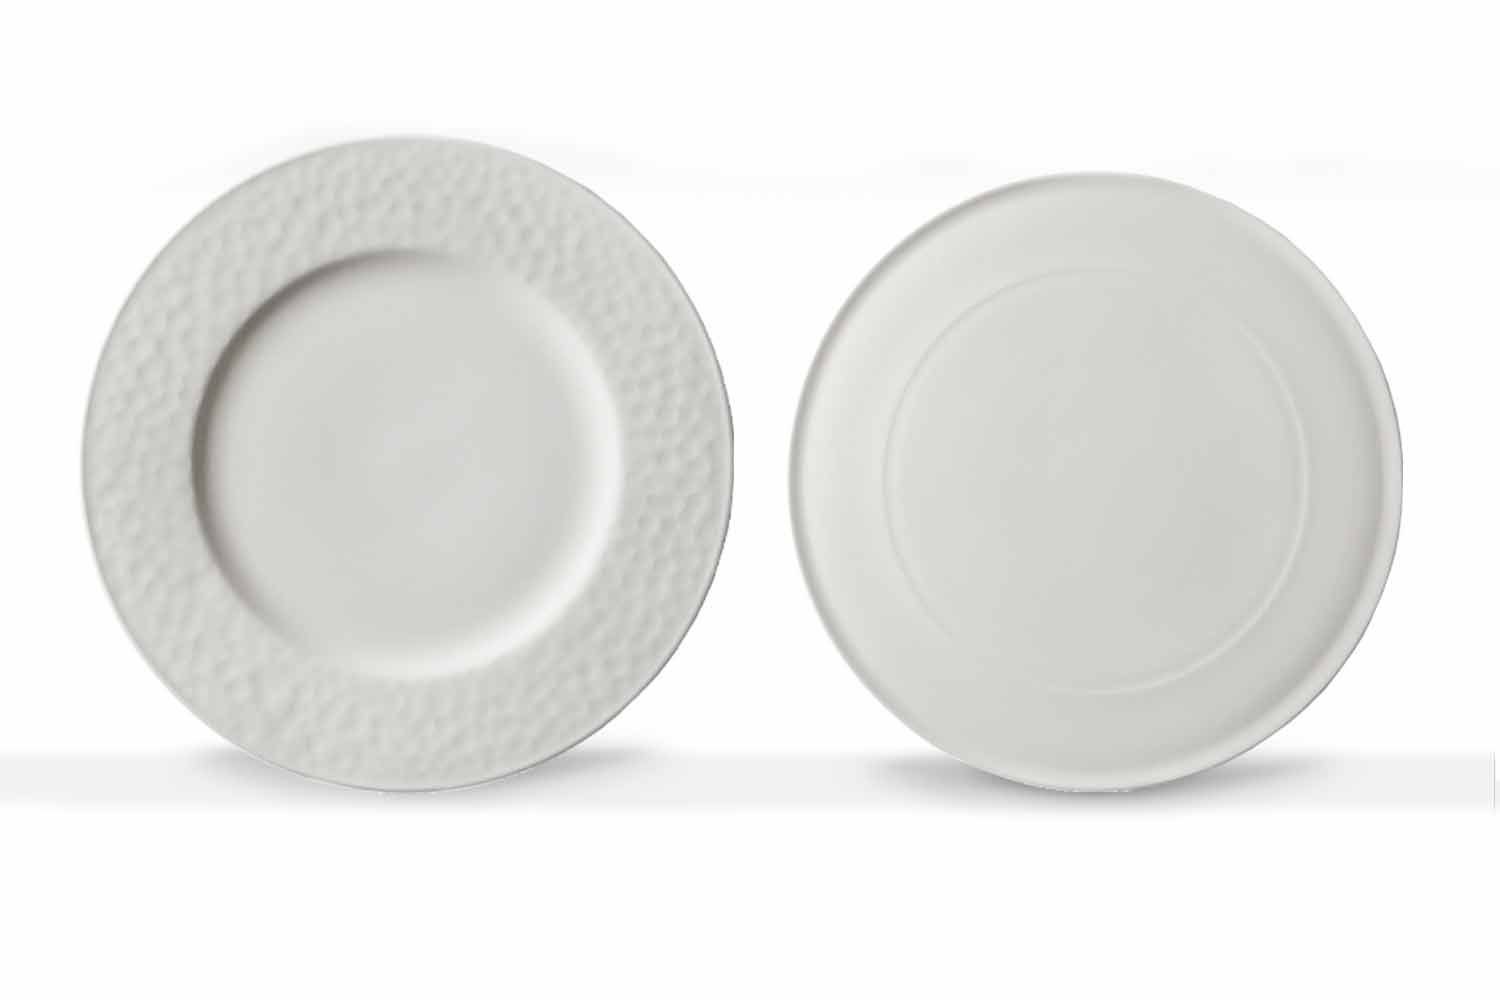 Mince Mockingbird lækage Service de vaisselle gastronomique au design moderne en porcelaine blanche